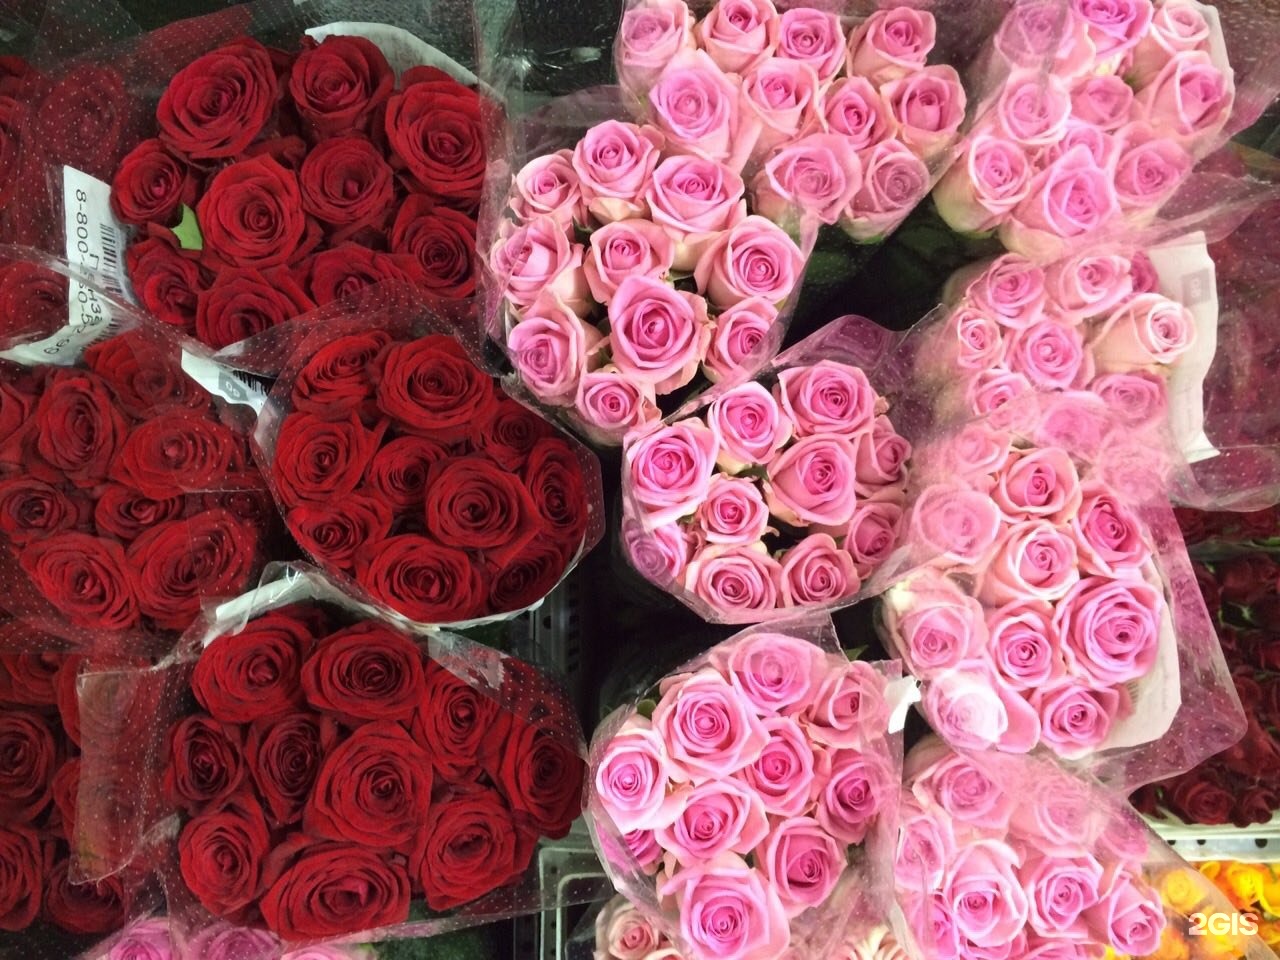 Цветочный магазин нягань. Магазин цветов возле 101 розы Нягань. Дом с розами Нижний Новгород.